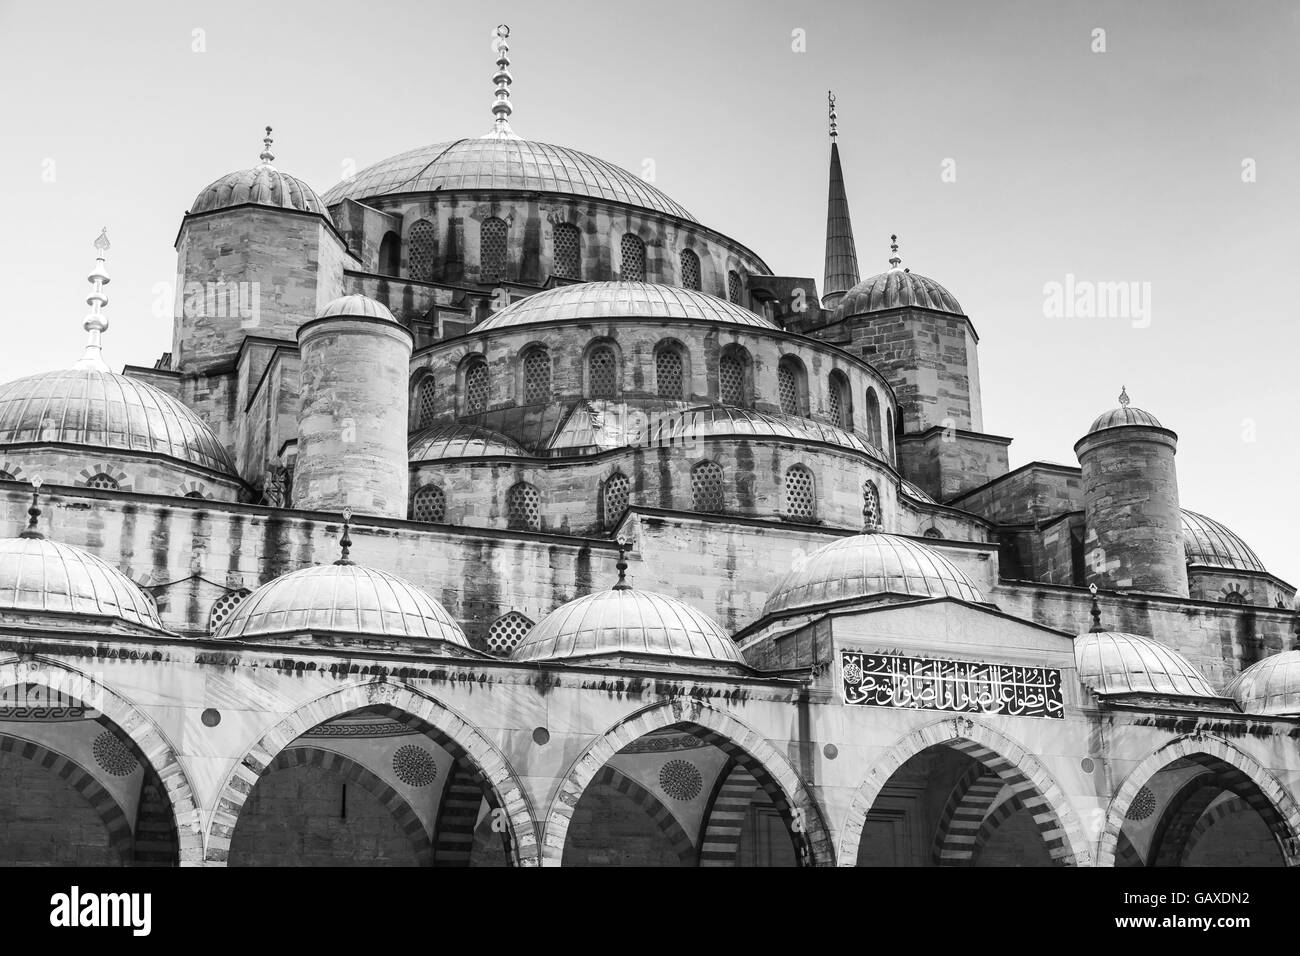 Fassade des blau oder Sultan Ahmed Mosque, ist es eine historische Moschee befindet sich in Istanbul, Türkei, eines der beliebtesten Wahrzeichen. Ich Stockfoto